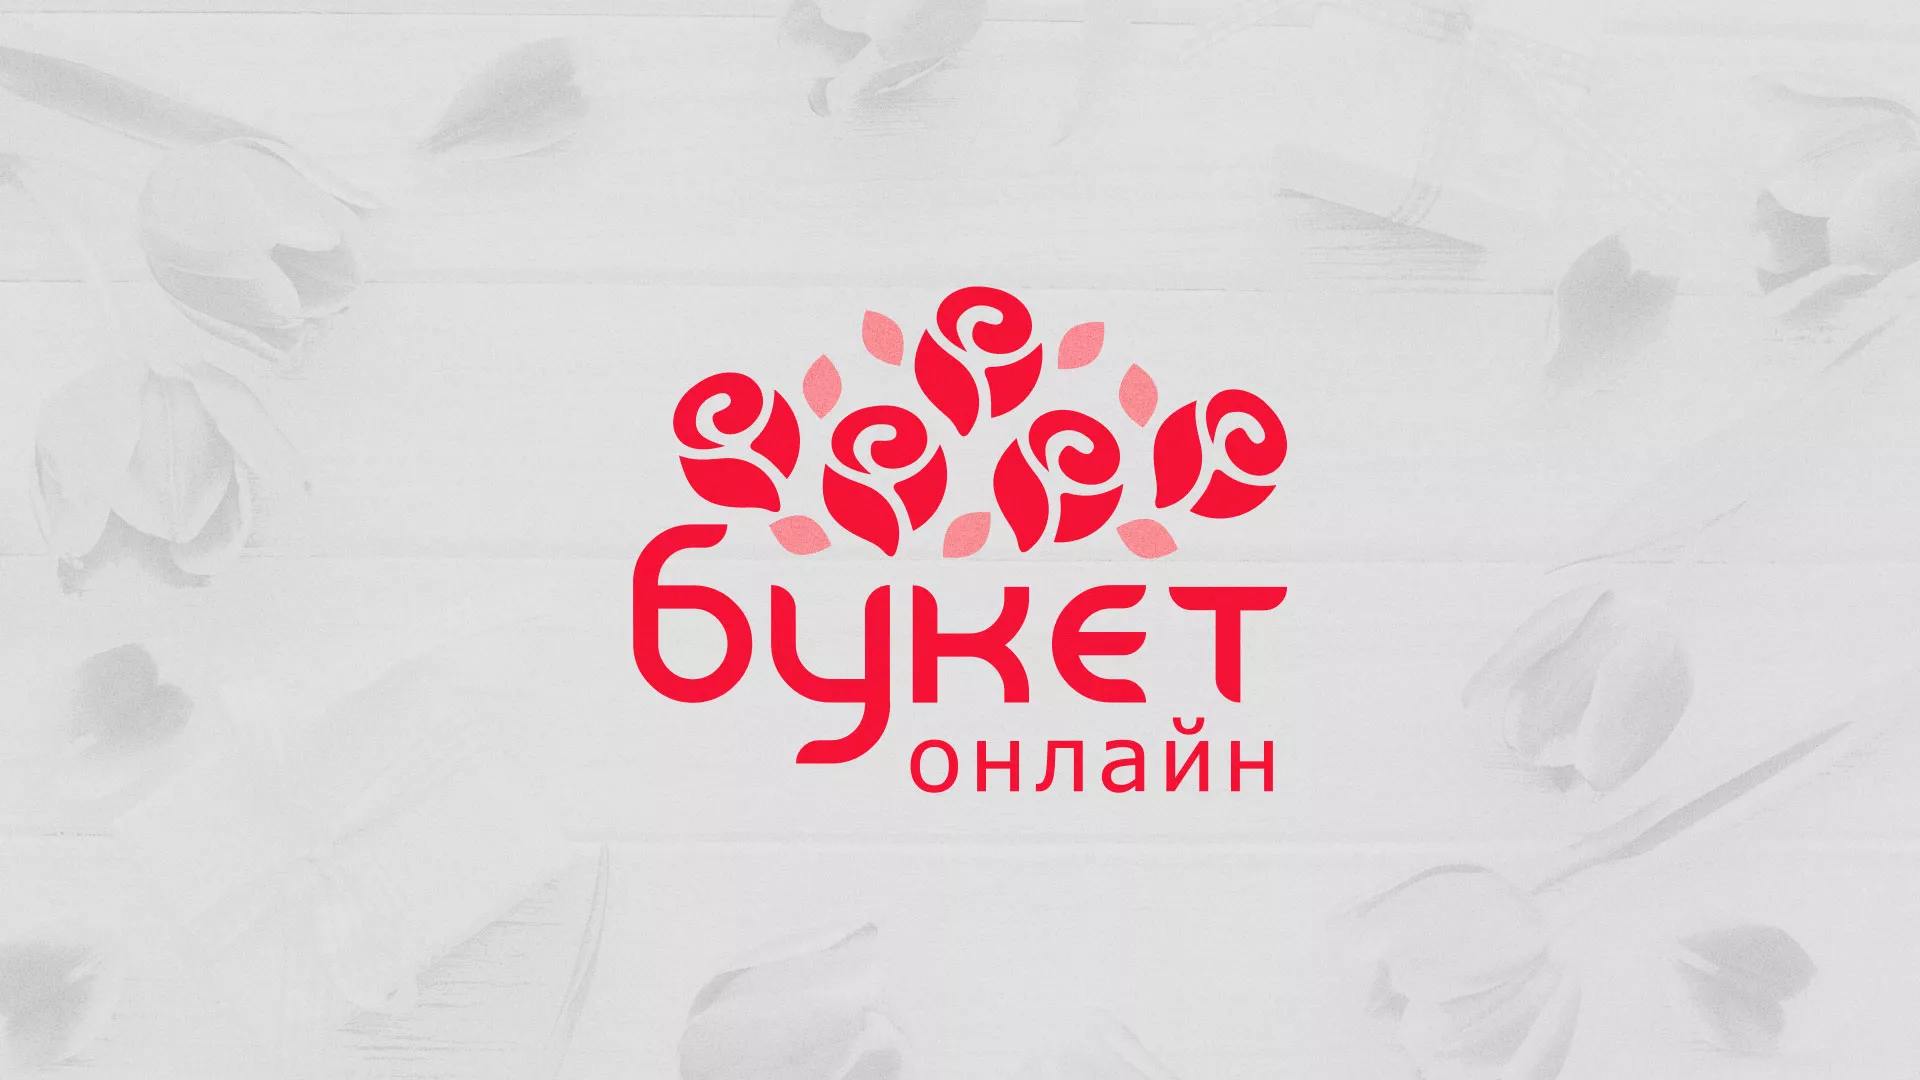 Создание интернет-магазина «Букет-онлайн» по цветам в Таганроге